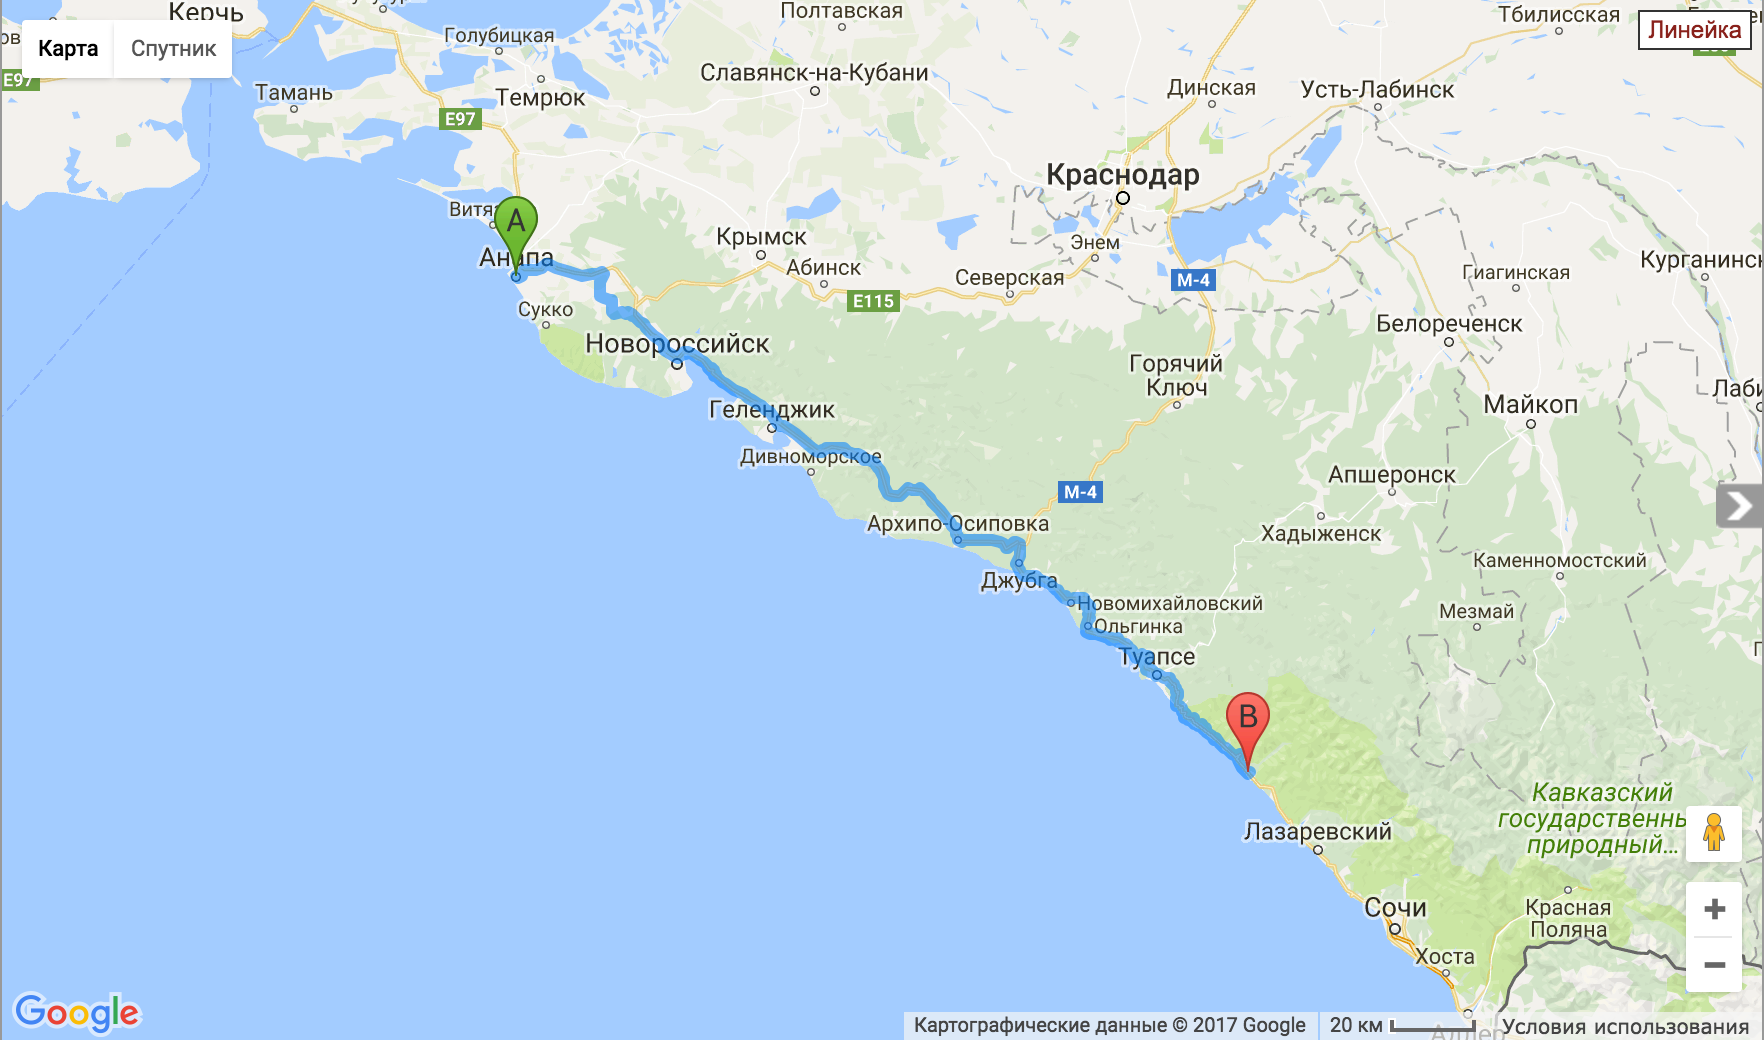 Расположение Геленджика на карте Черноморского побережья. Карта Черноморского побережья Краснодарского края от Анапы до Сочи. Ласточка джубга